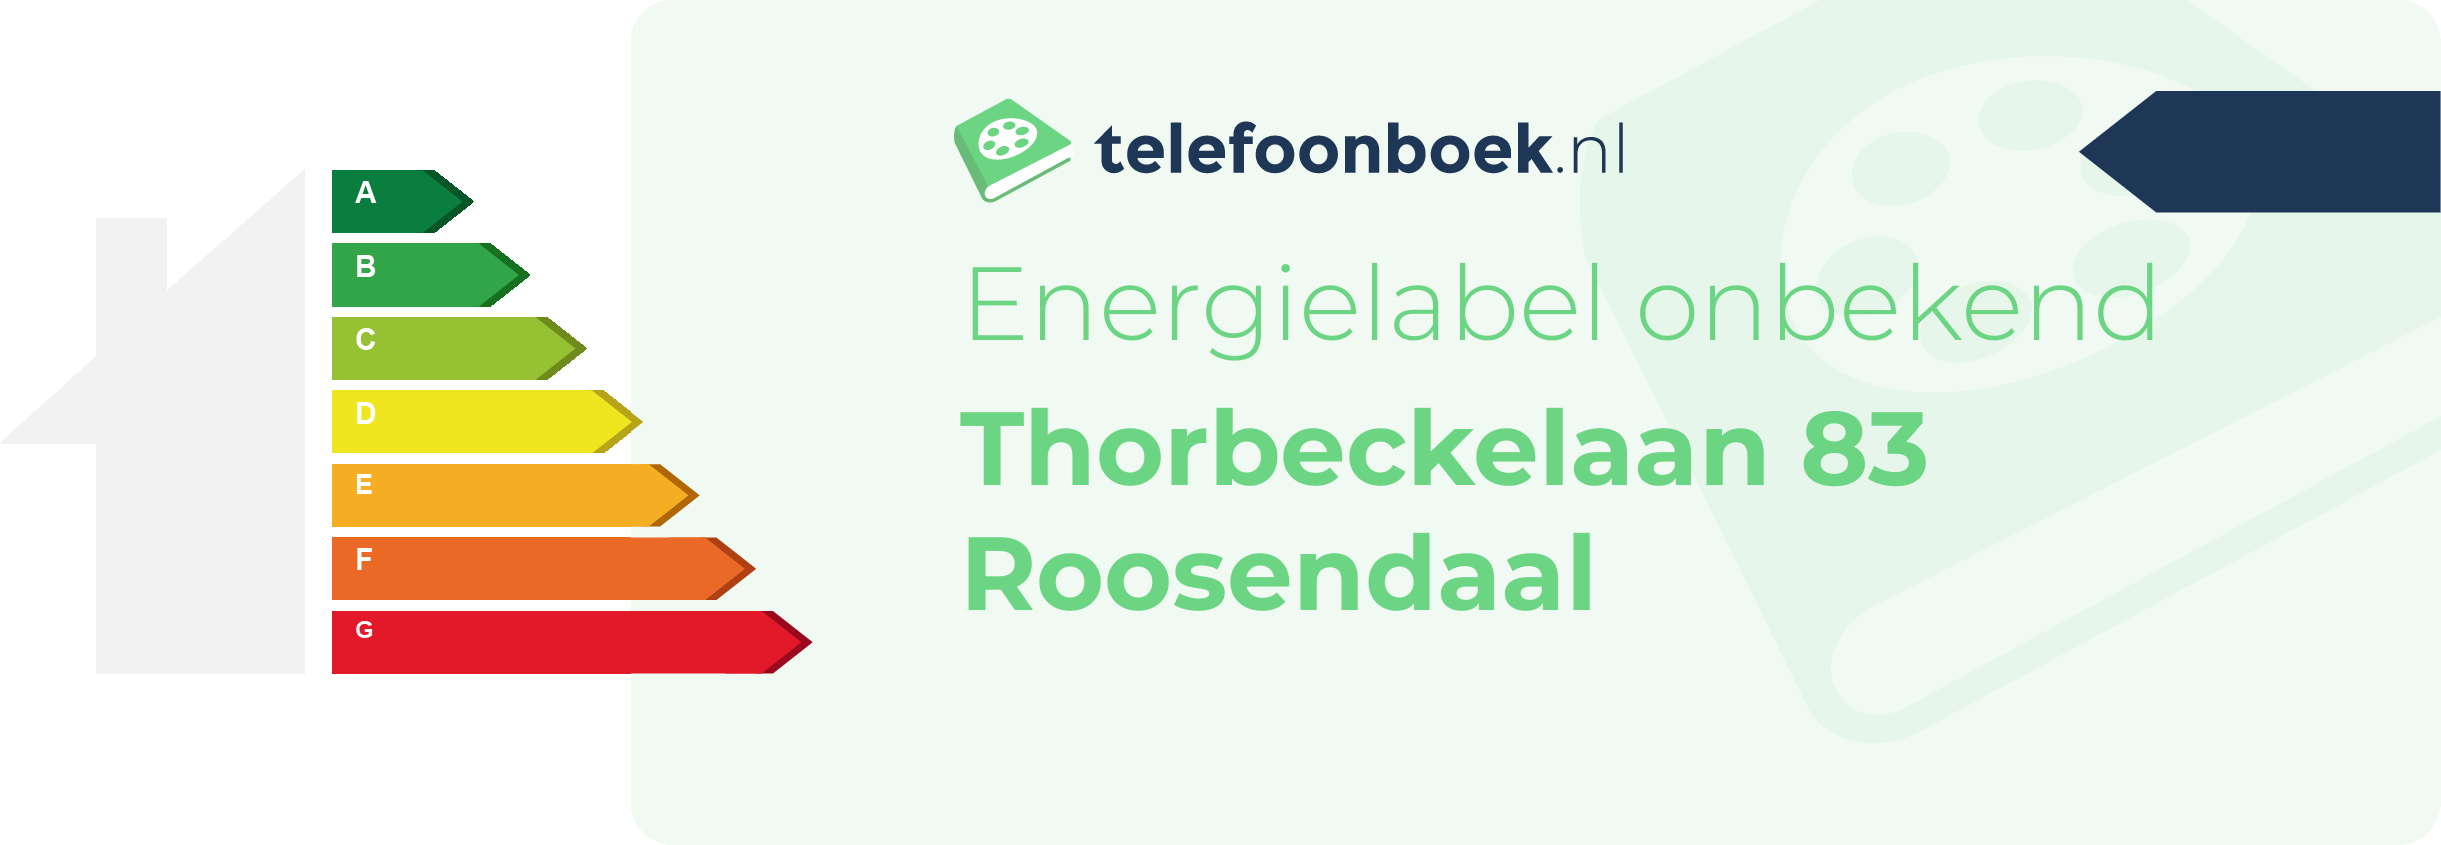 Energielabel Thorbeckelaan 83 Roosendaal